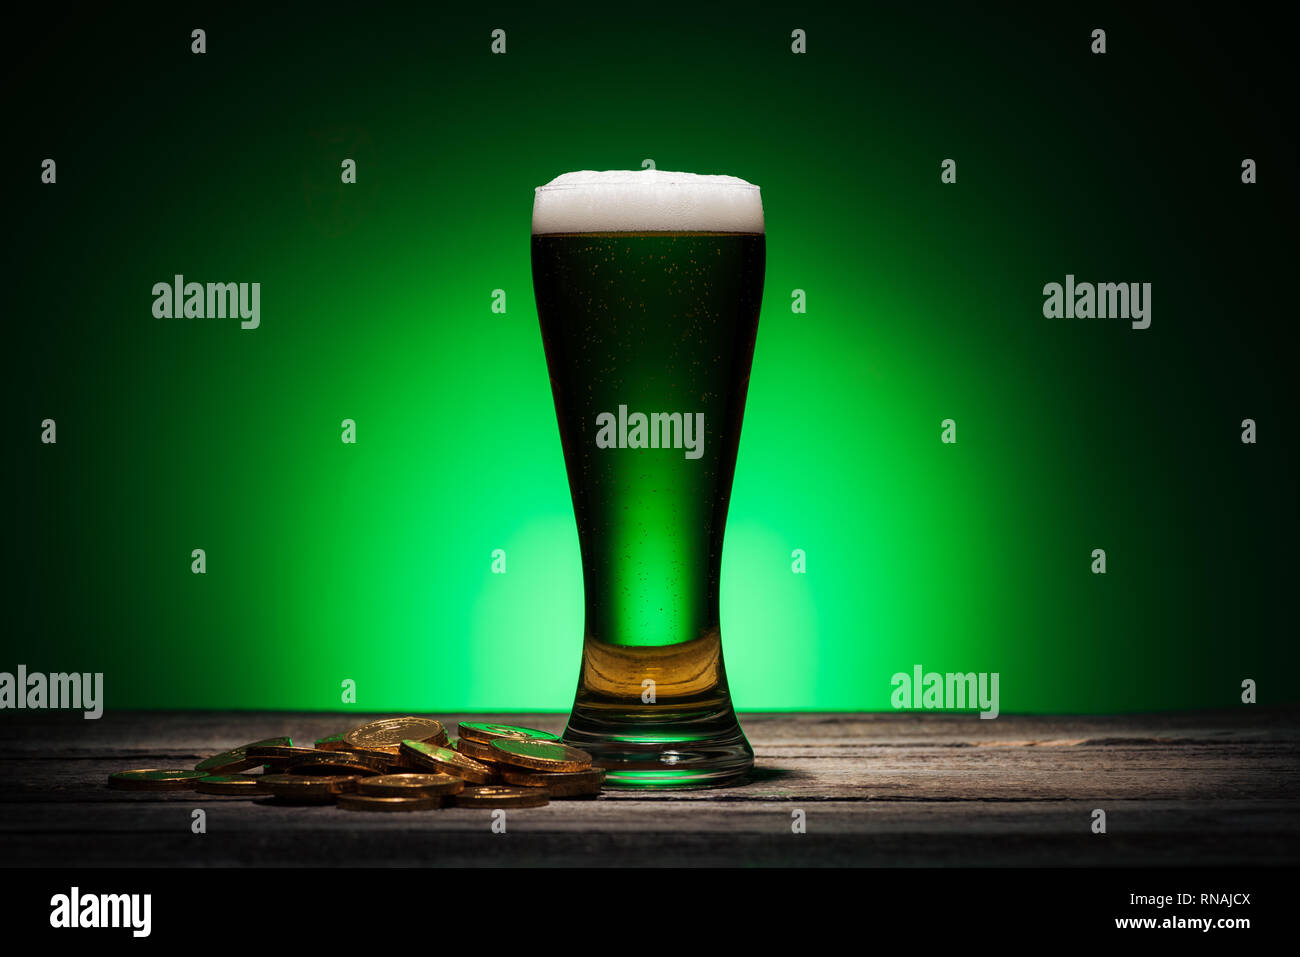 Glas grün Bier in der Nähe von Golden Coins auf st patricks day auf grünem Hintergrund Stockfoto